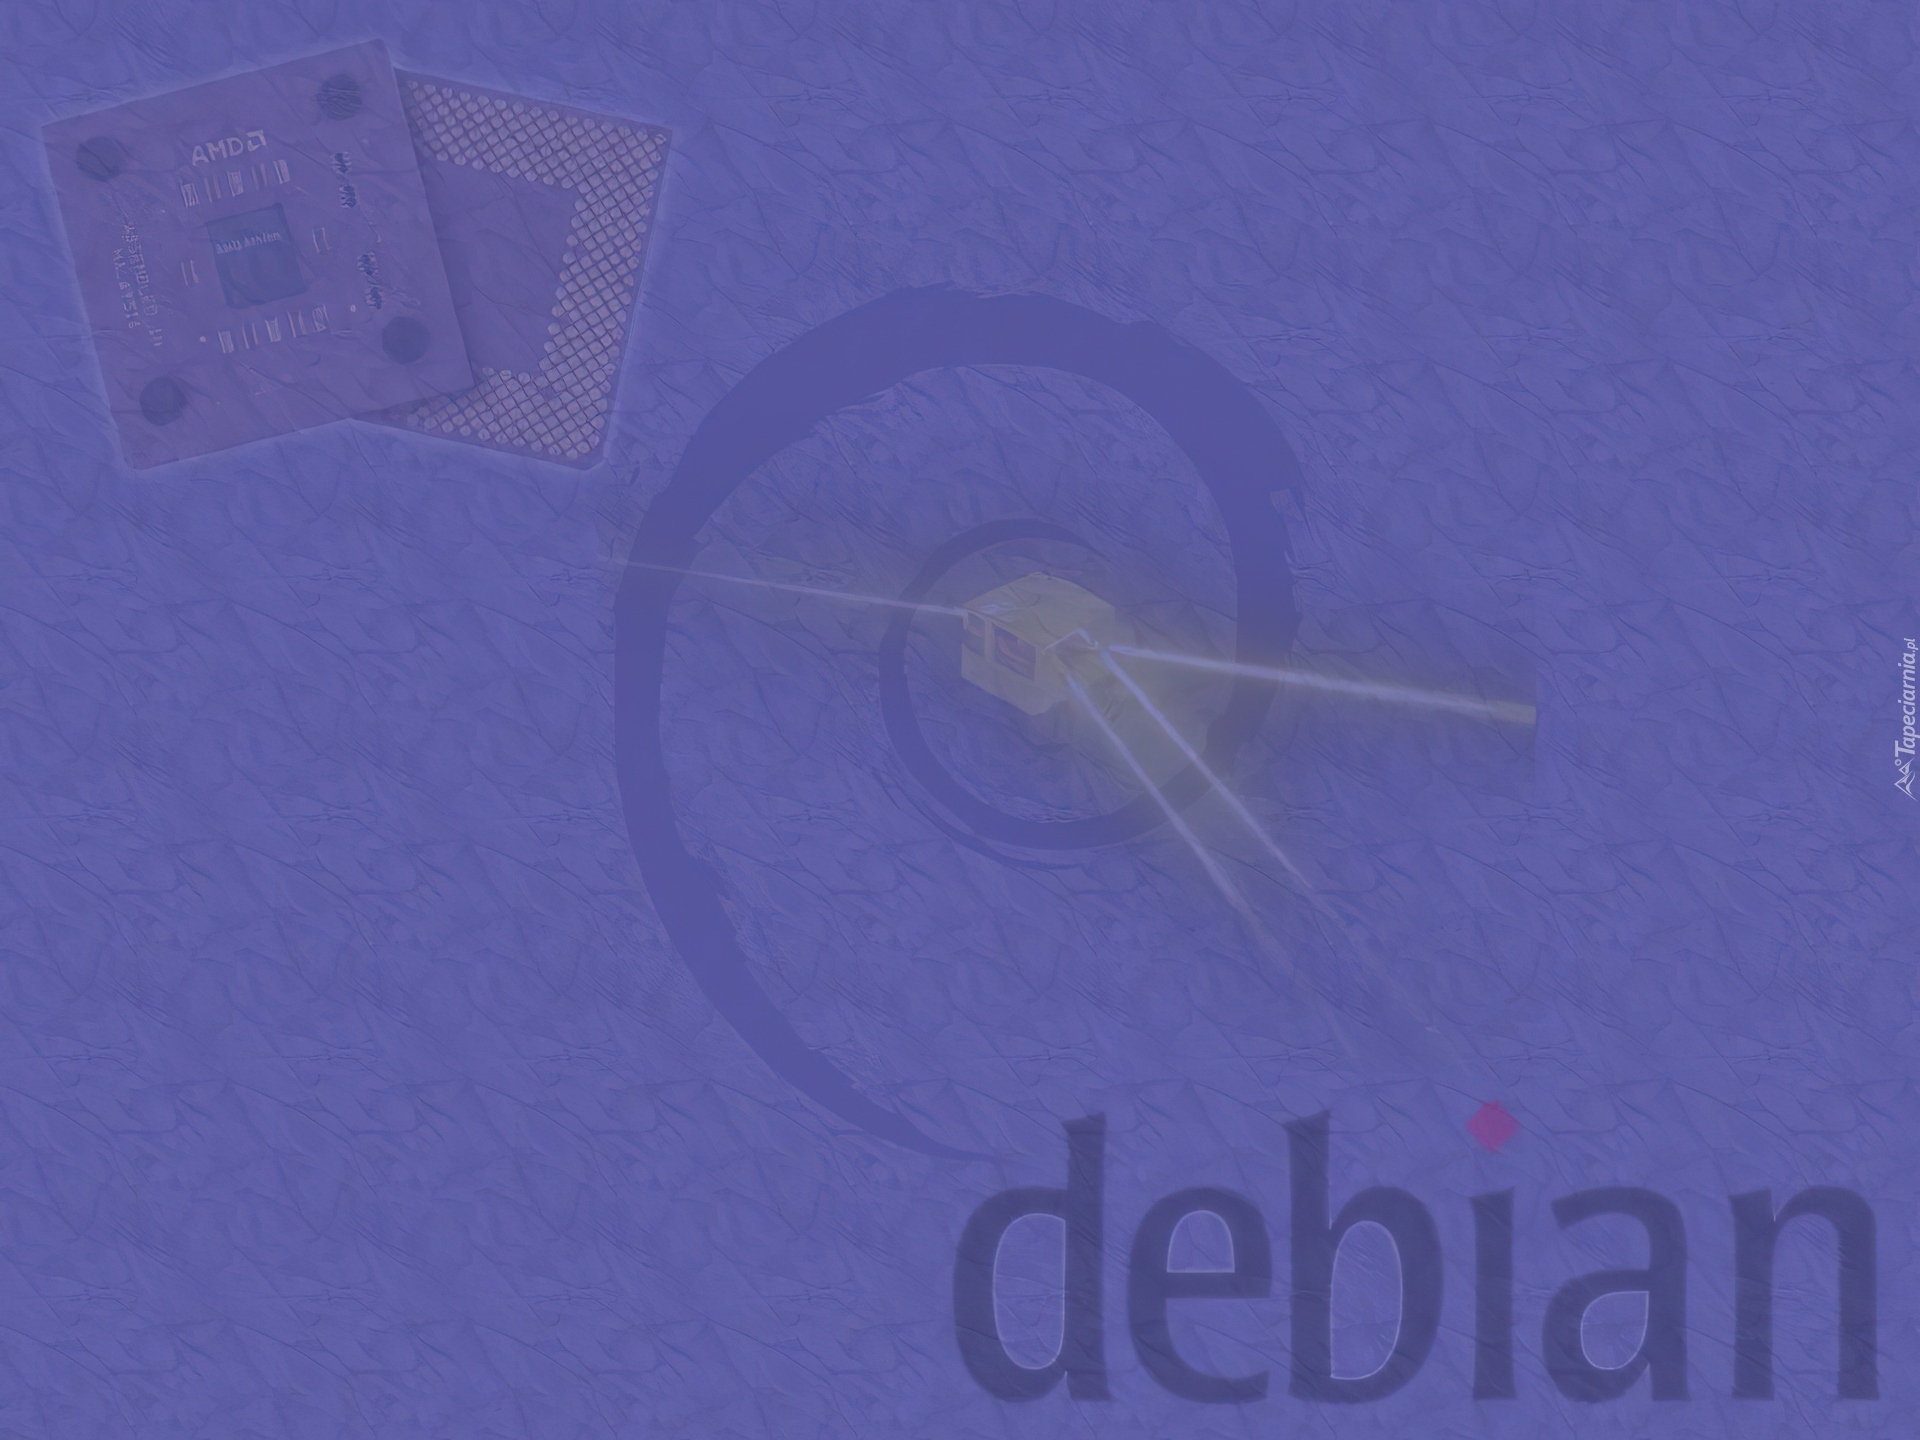 Linux Debian, grafika, muszla, ślimak, zawijas